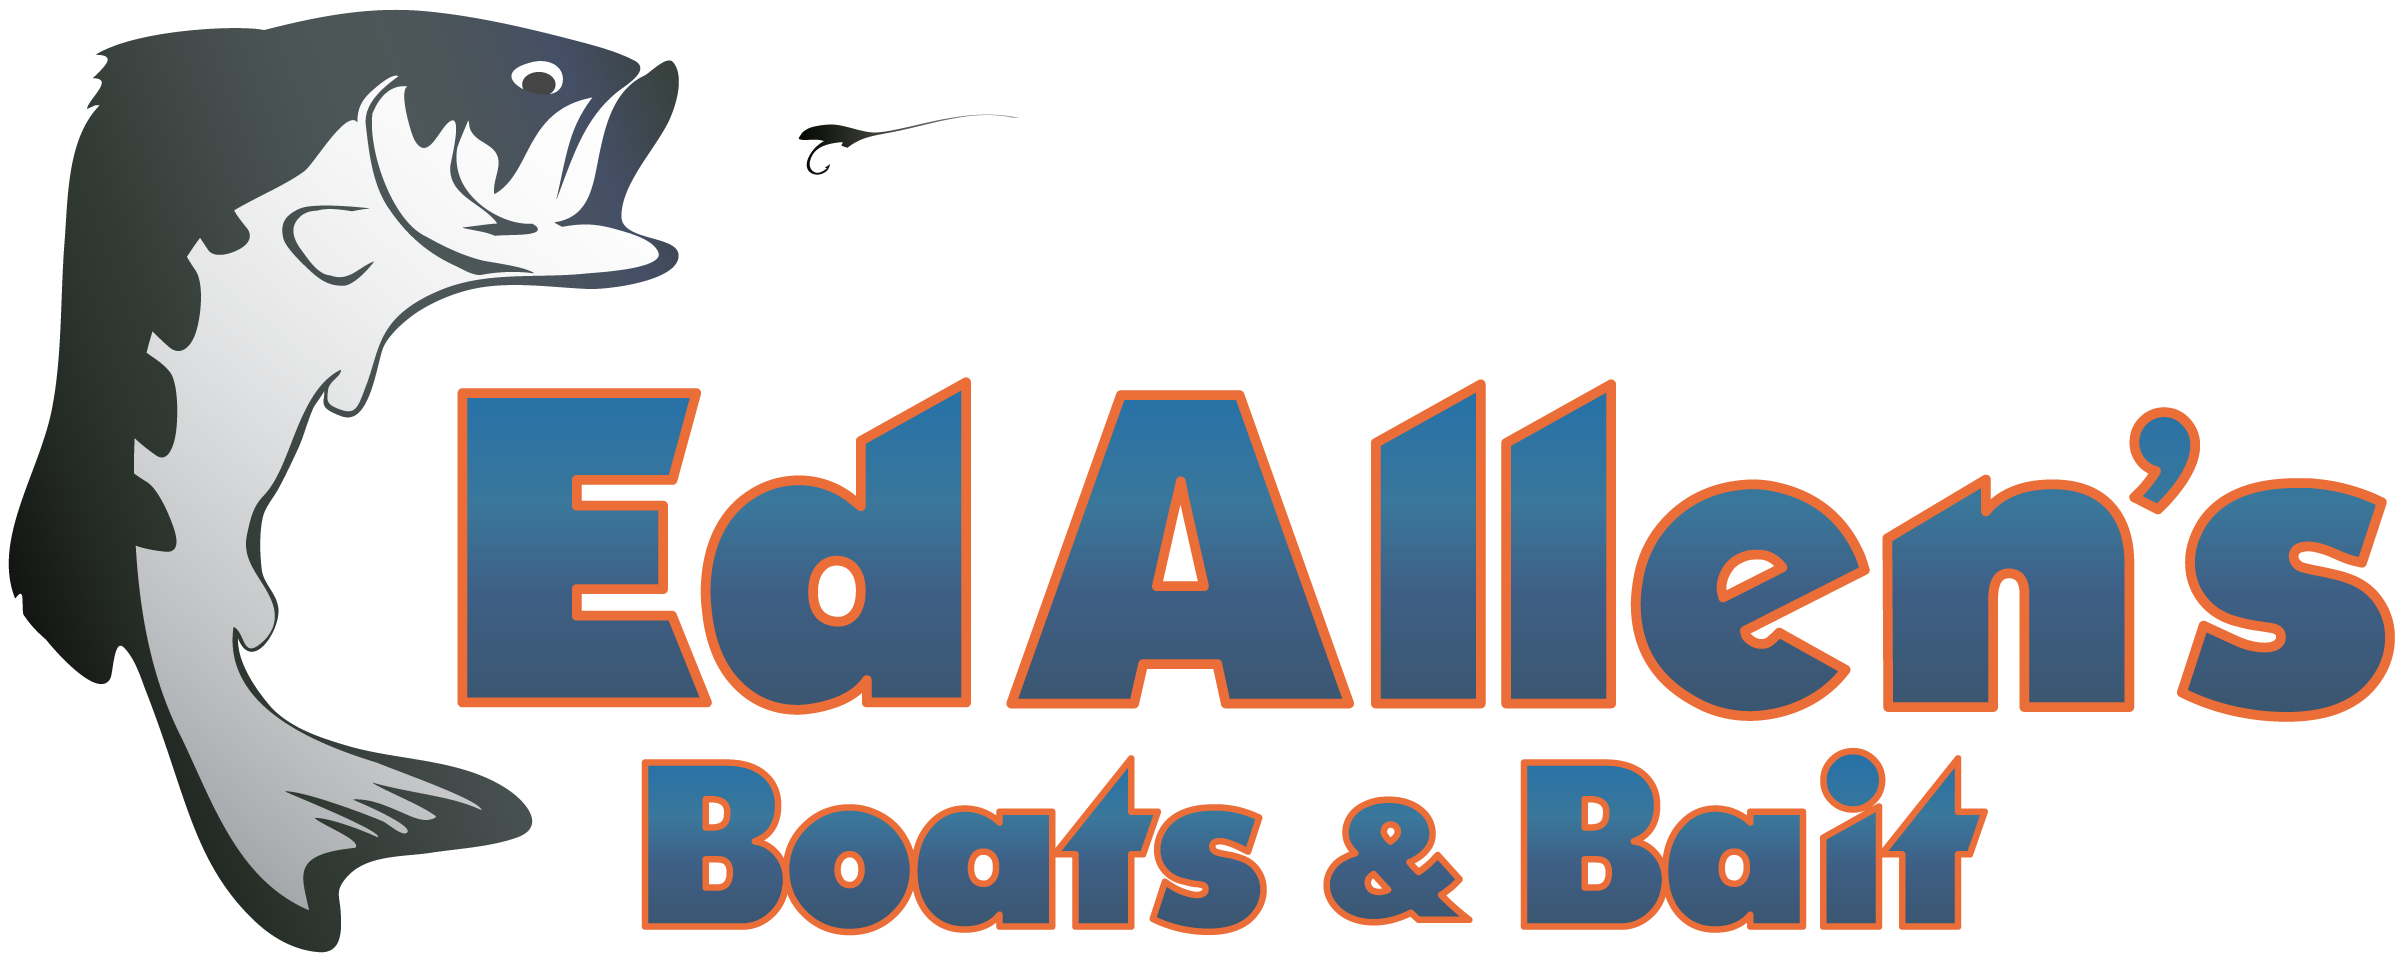 Ed Allen's Boats & Bait